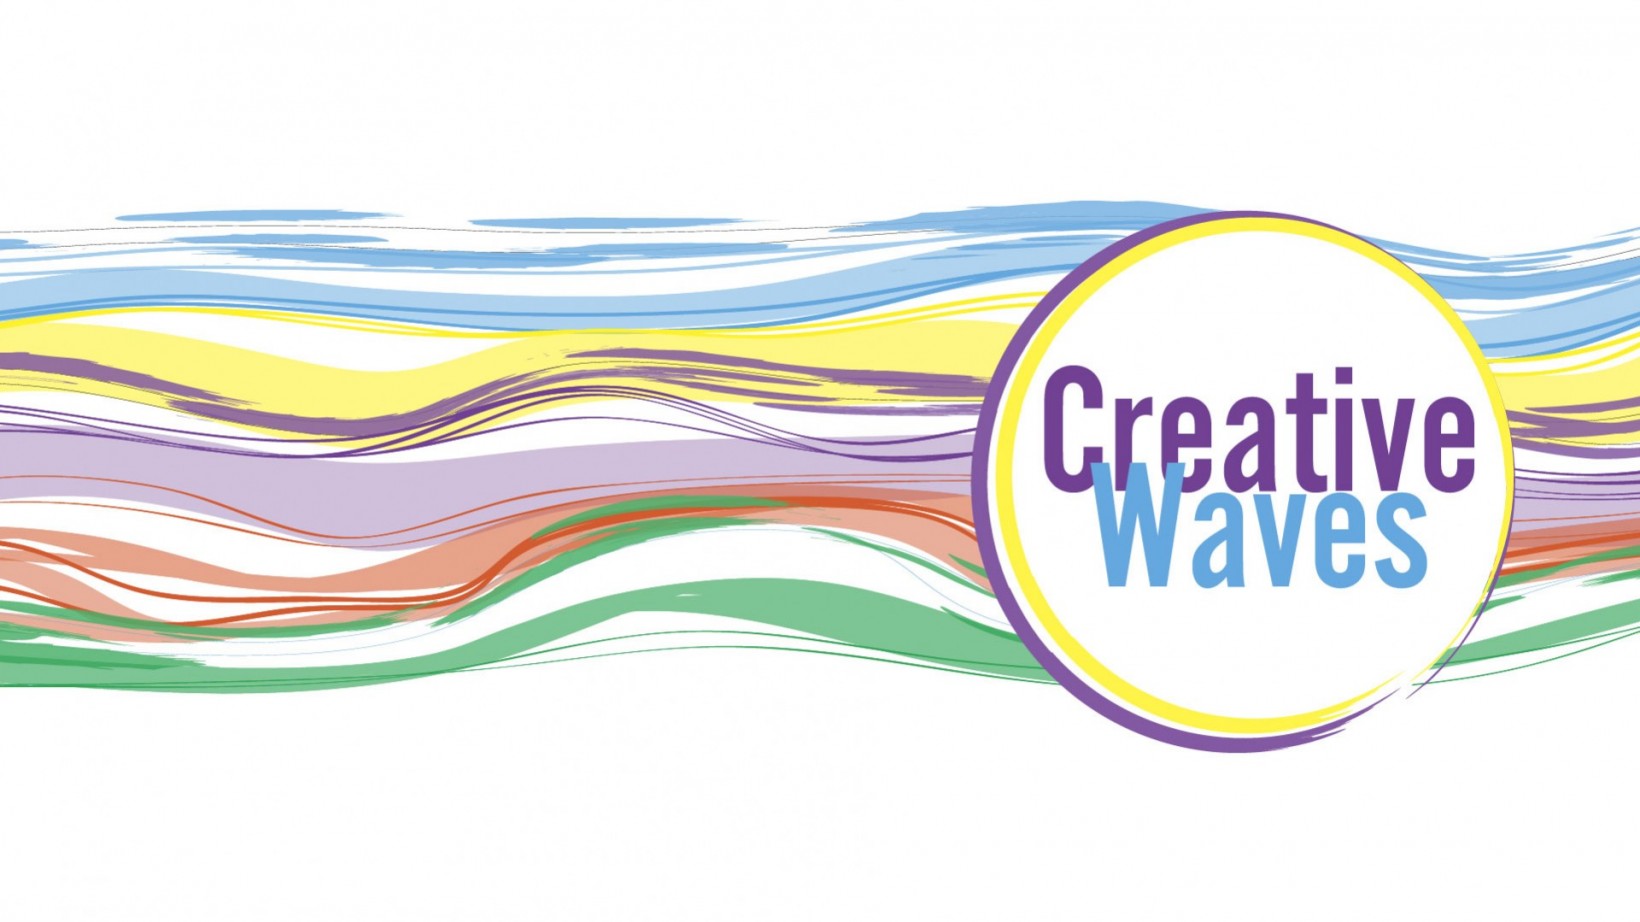 abstrakcyjny obrazek, kolorowe fale napis "creative waves"